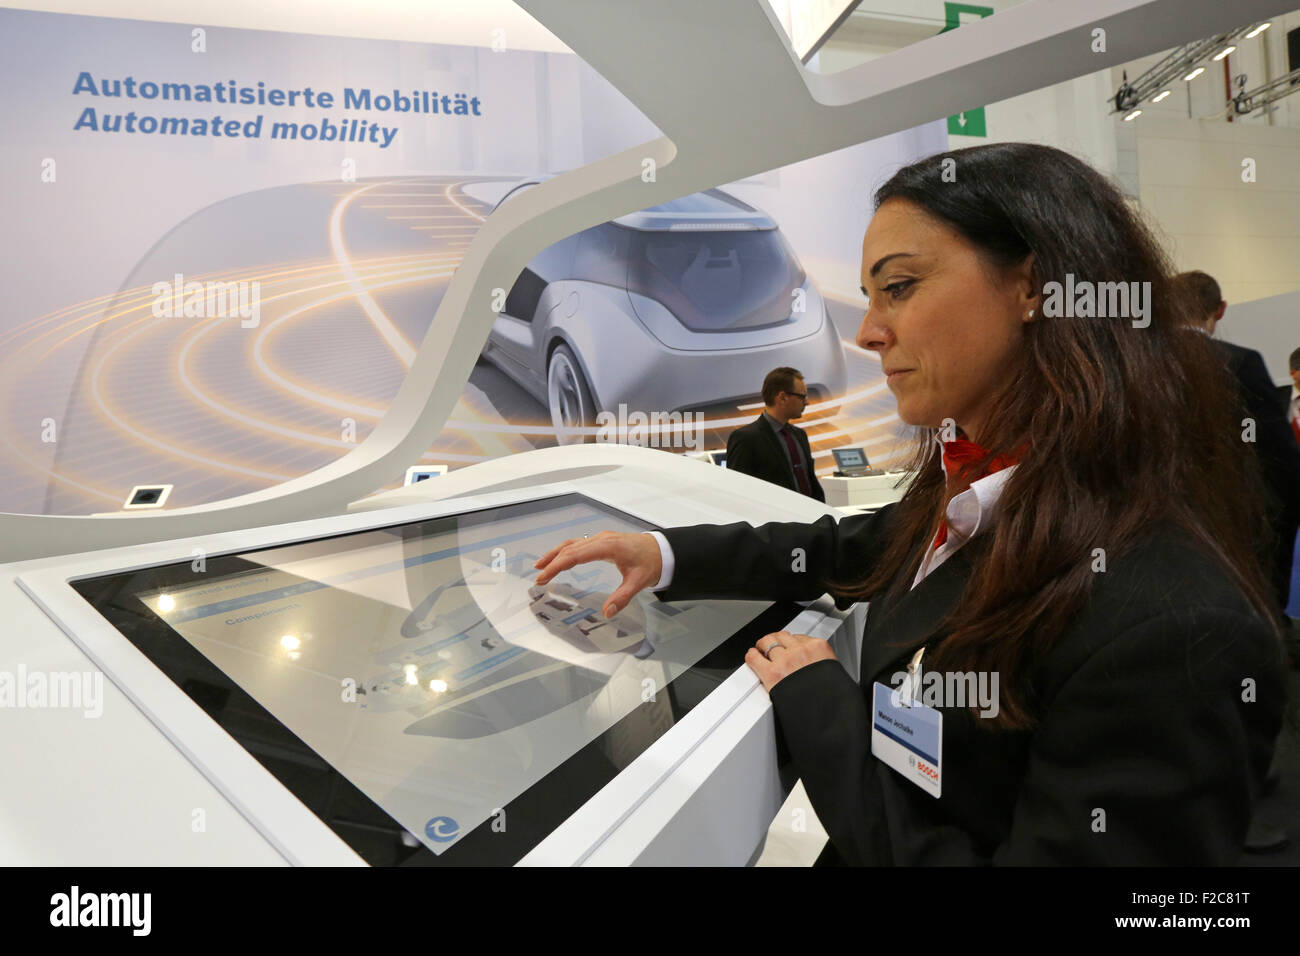 Frankfurt/M, 16.09.2015 - sistema de movilidad conectada en el stand de Bosch en el 66º Salón Internacional del Automóvil IAA 2015 (Internationale Automobil Ausstellung IAA) en Frankfurt/Main, Alemania Foto de stock